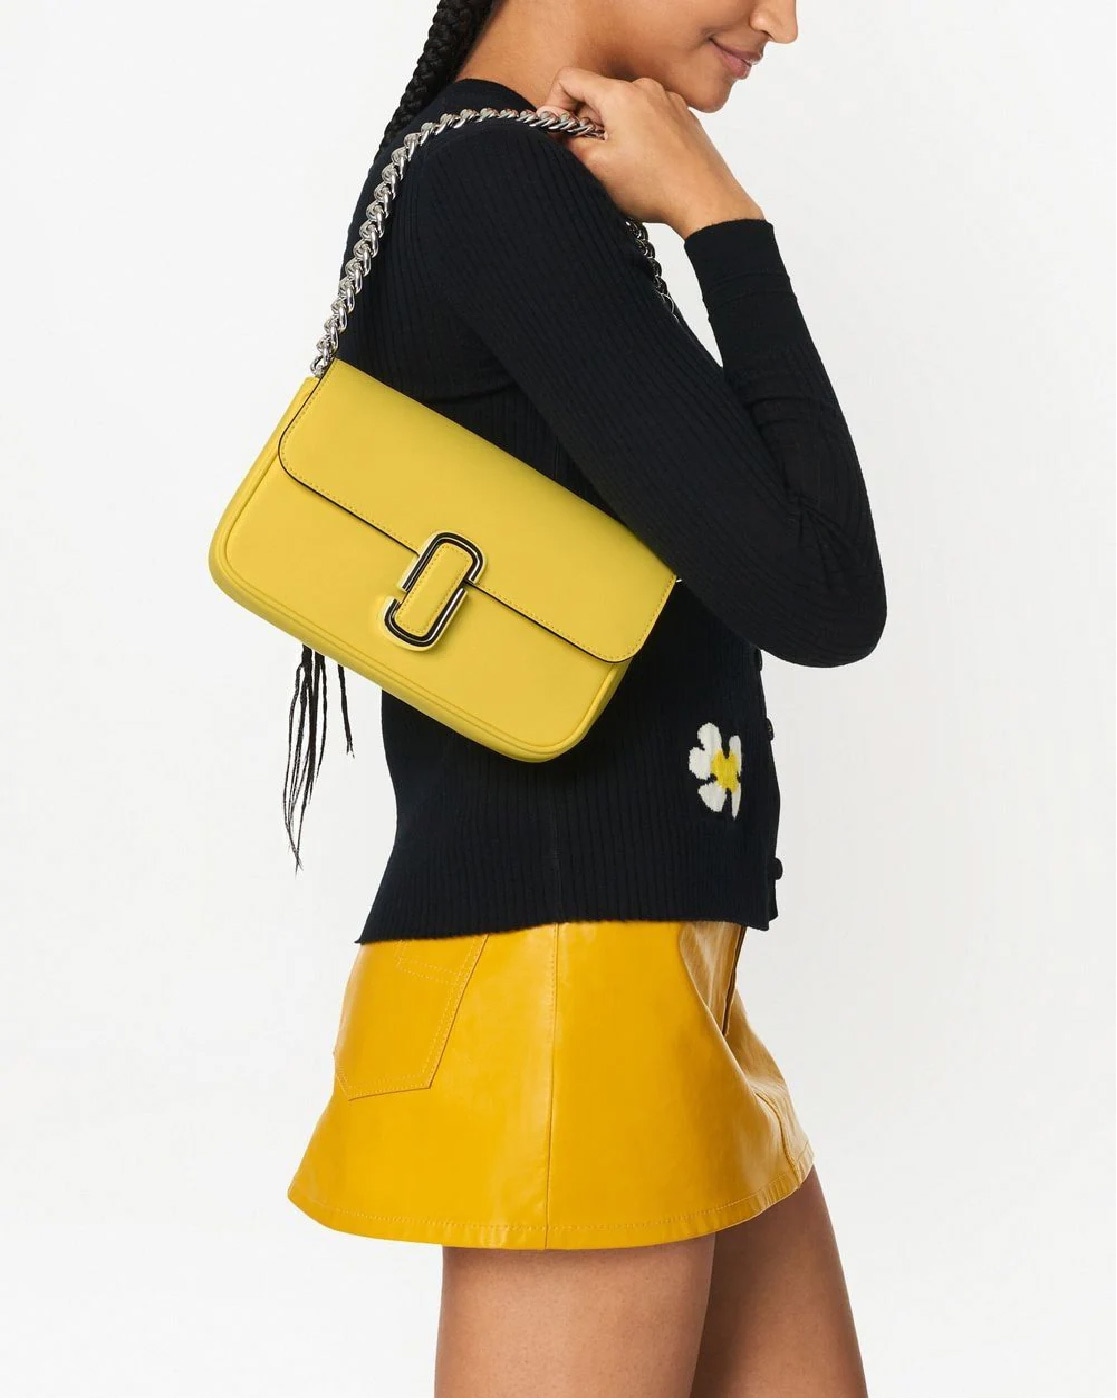 New Vintage Gold Marc Jacobs Evening Bag Clutch Shoulder Bag Quilted - Ruby  Lane